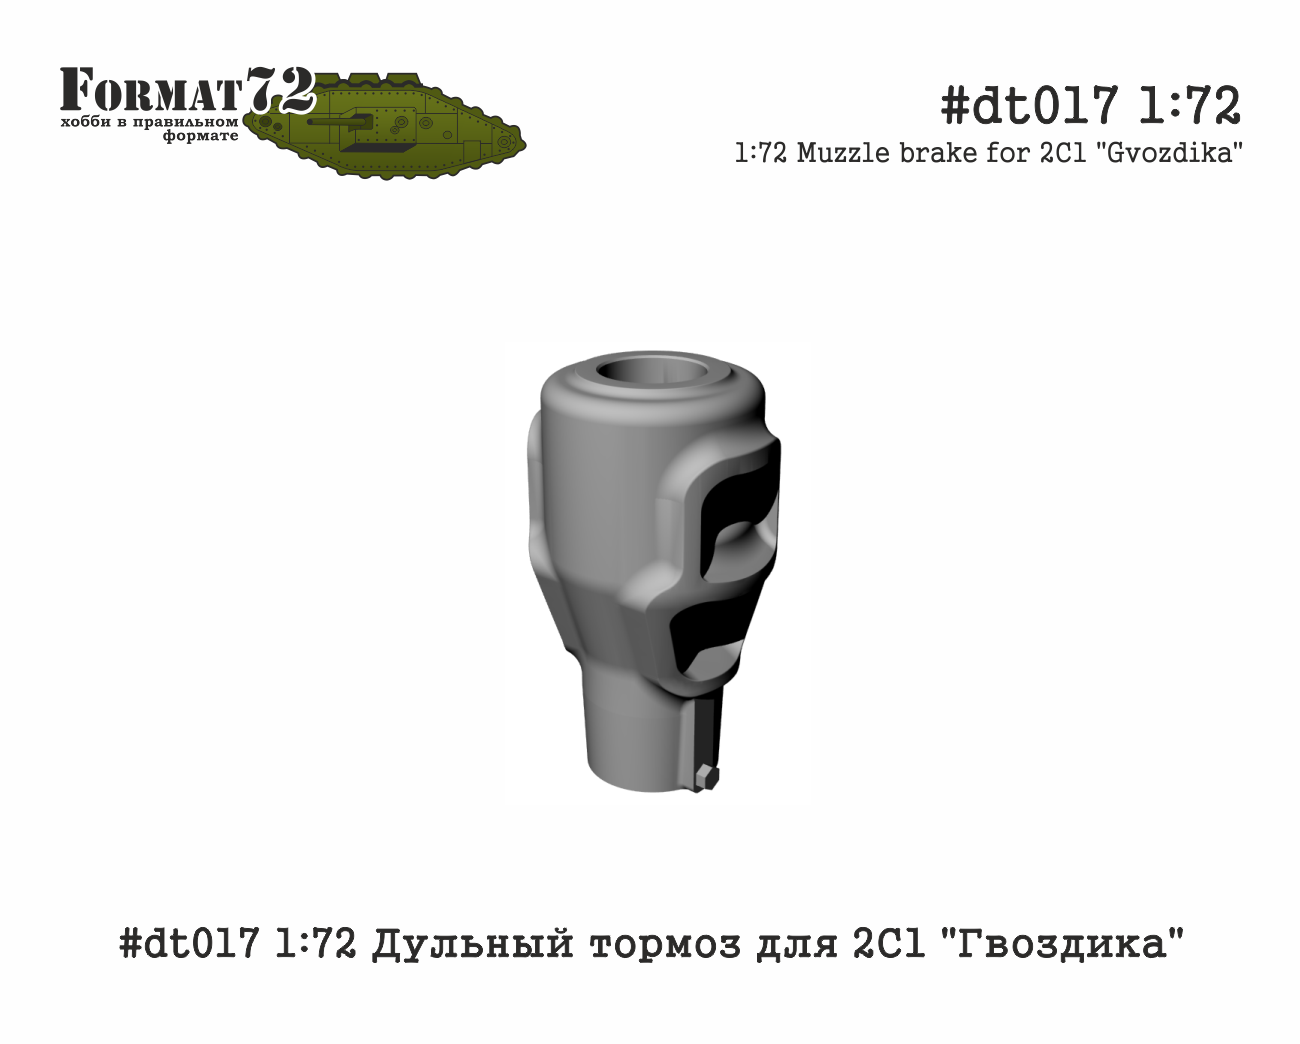 2S1 Gvozdika gun muzzle brake